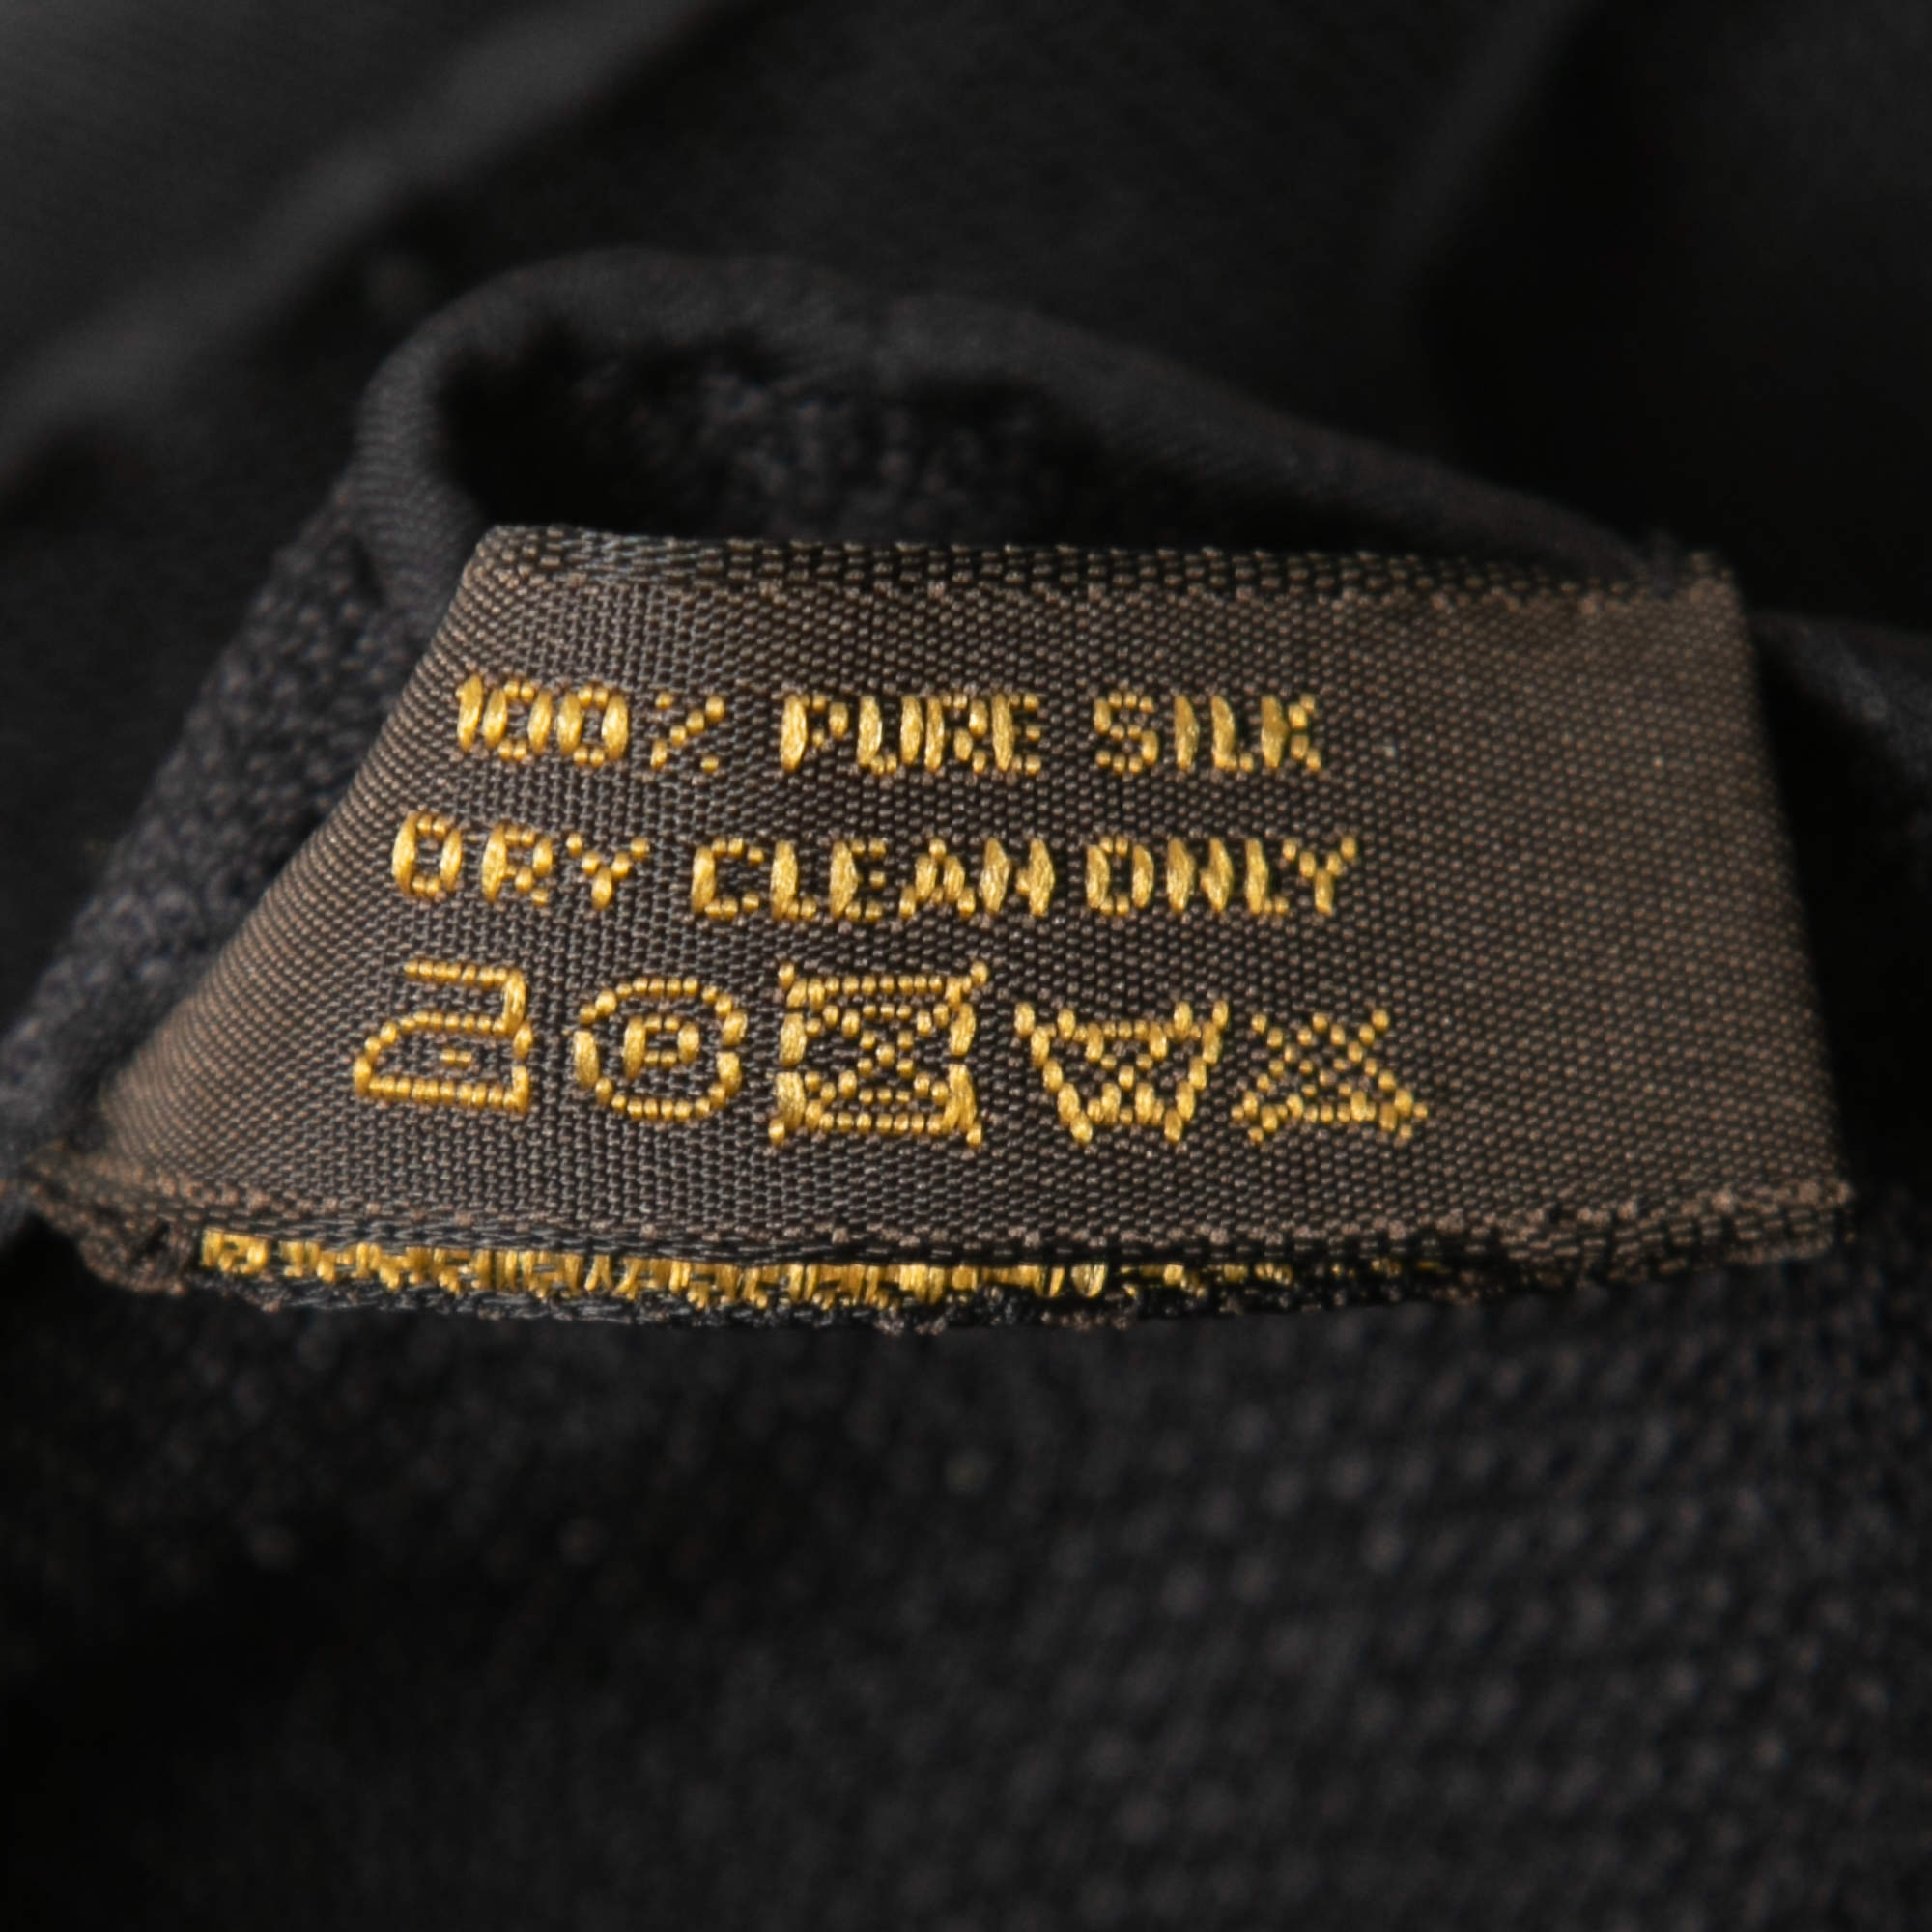 Silk scarf Louis Vuitton Black in Silk - 30828622